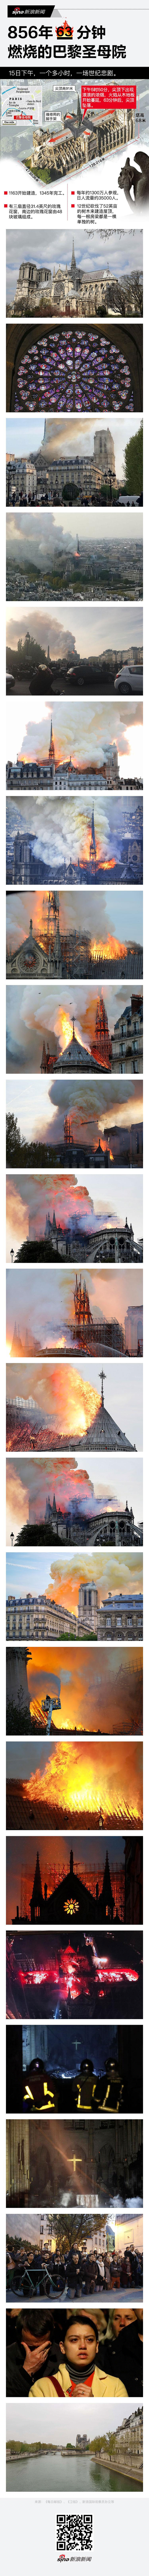 856年 63分钟 燃烧的巴黎圣母院